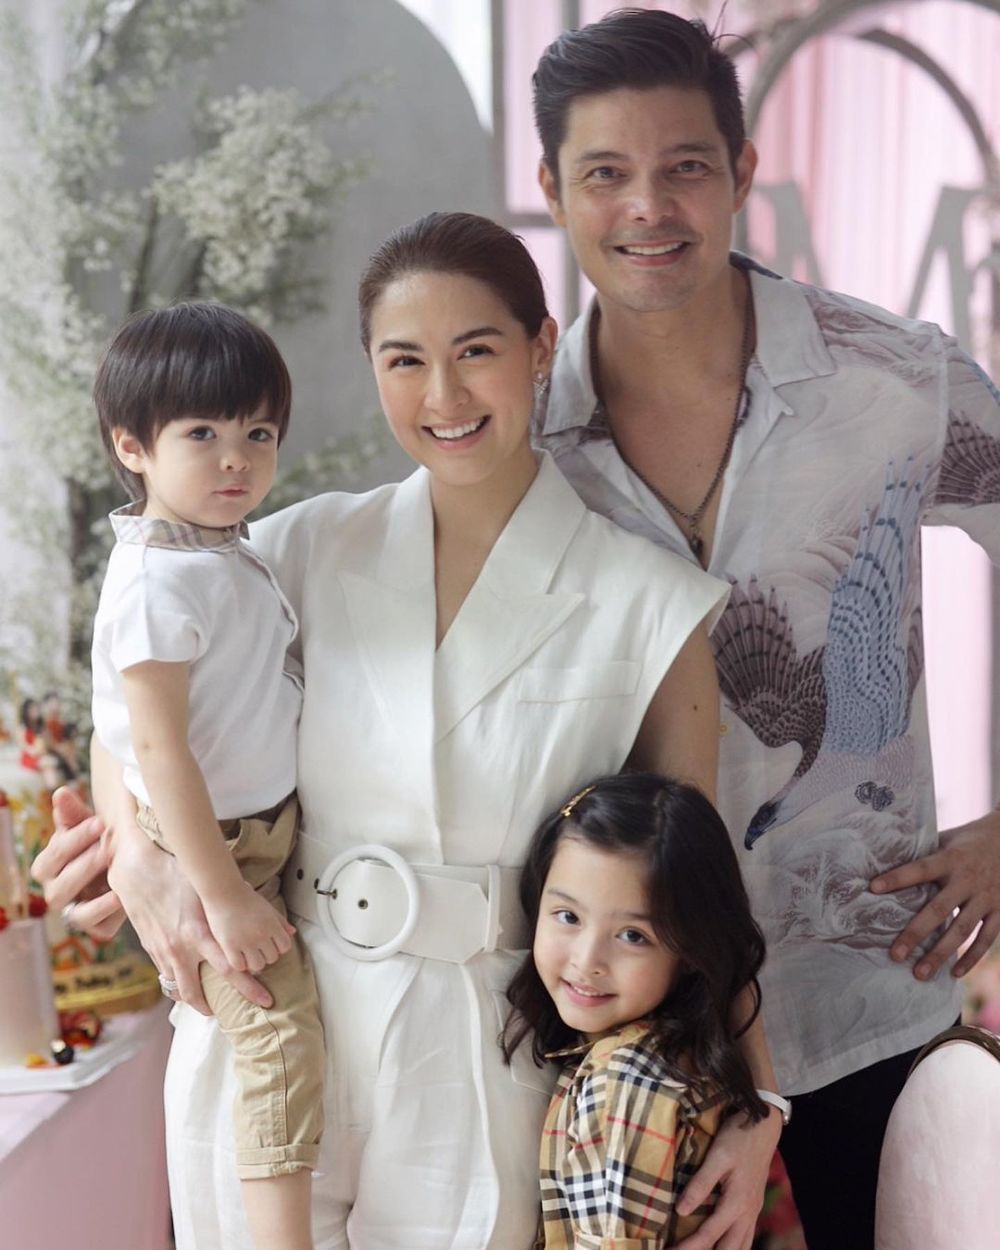  
Gia đình nhỏ của mỹ nhân đẹp nhất Philippines. (Ảnh: IG Marian Rivera)